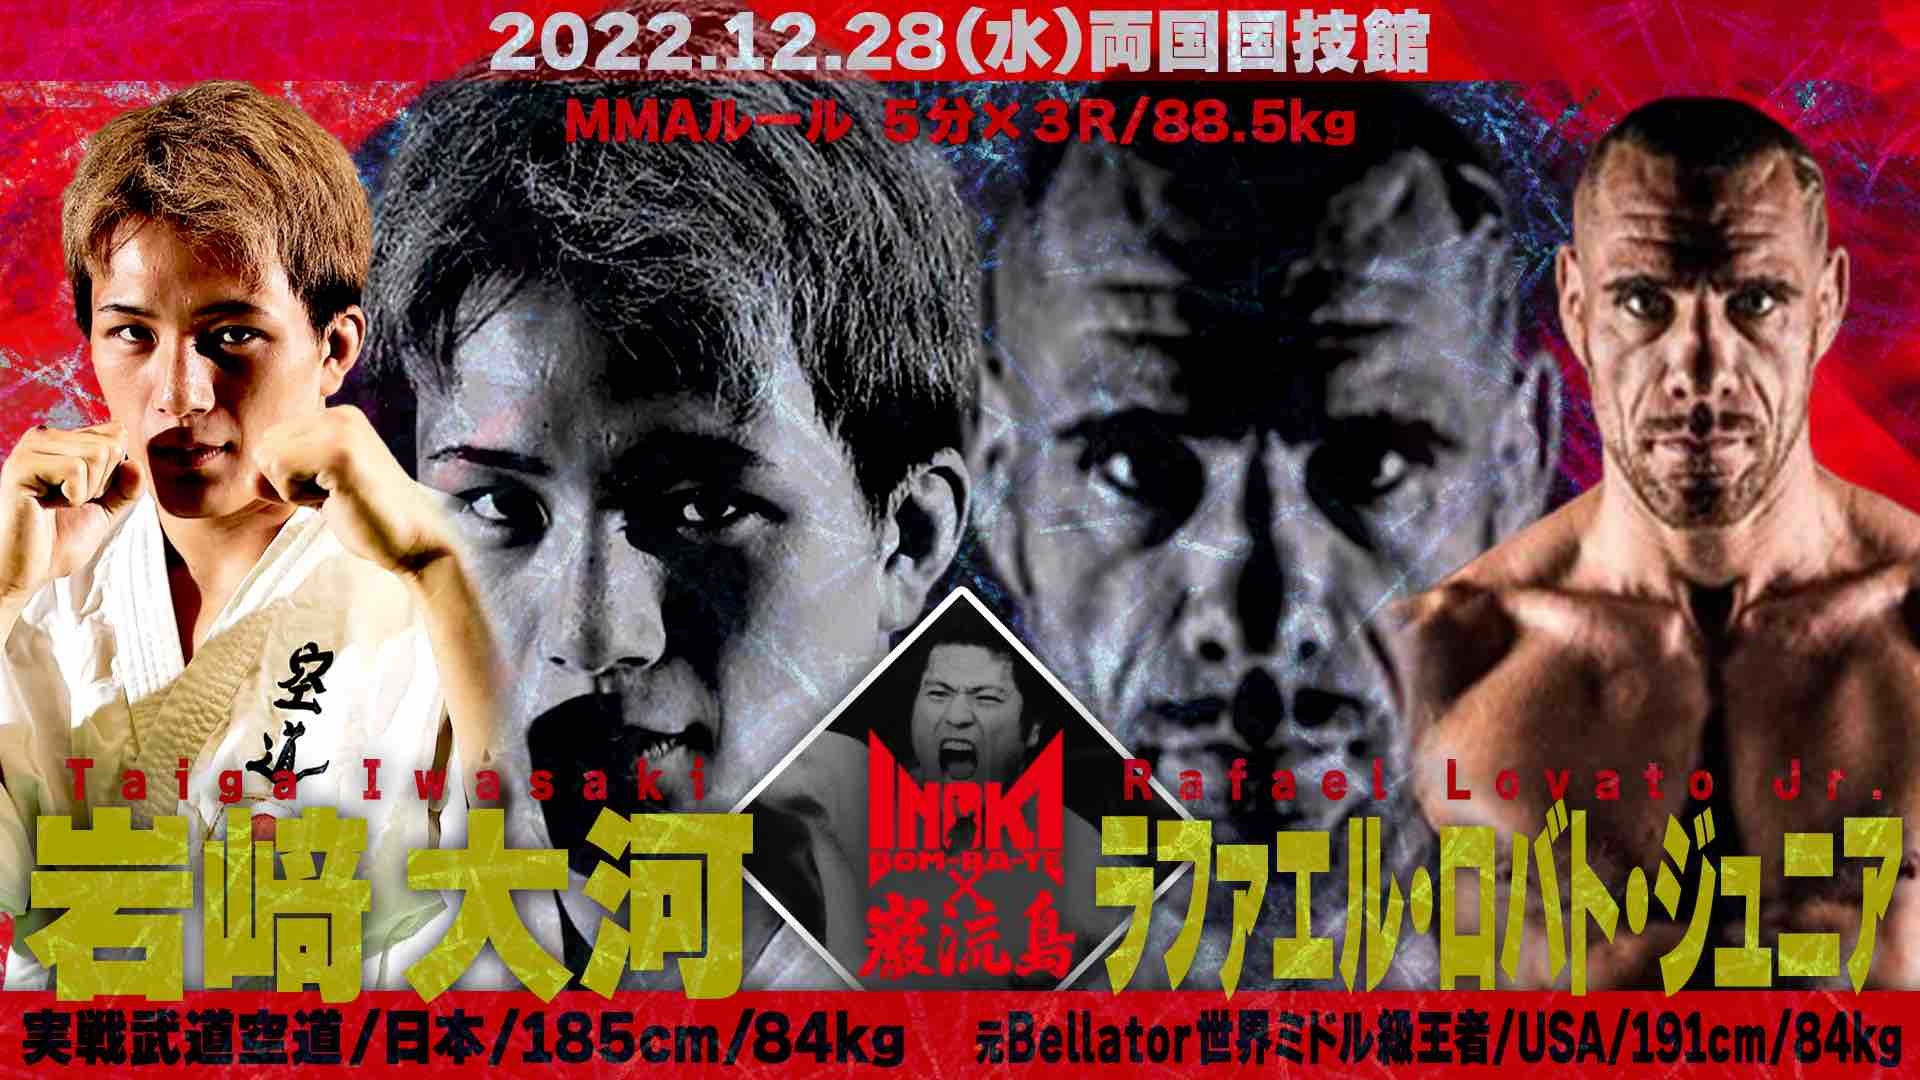 【七鋒戦】 岩崎大河 vs ラファエル・ロバト・ジュニア